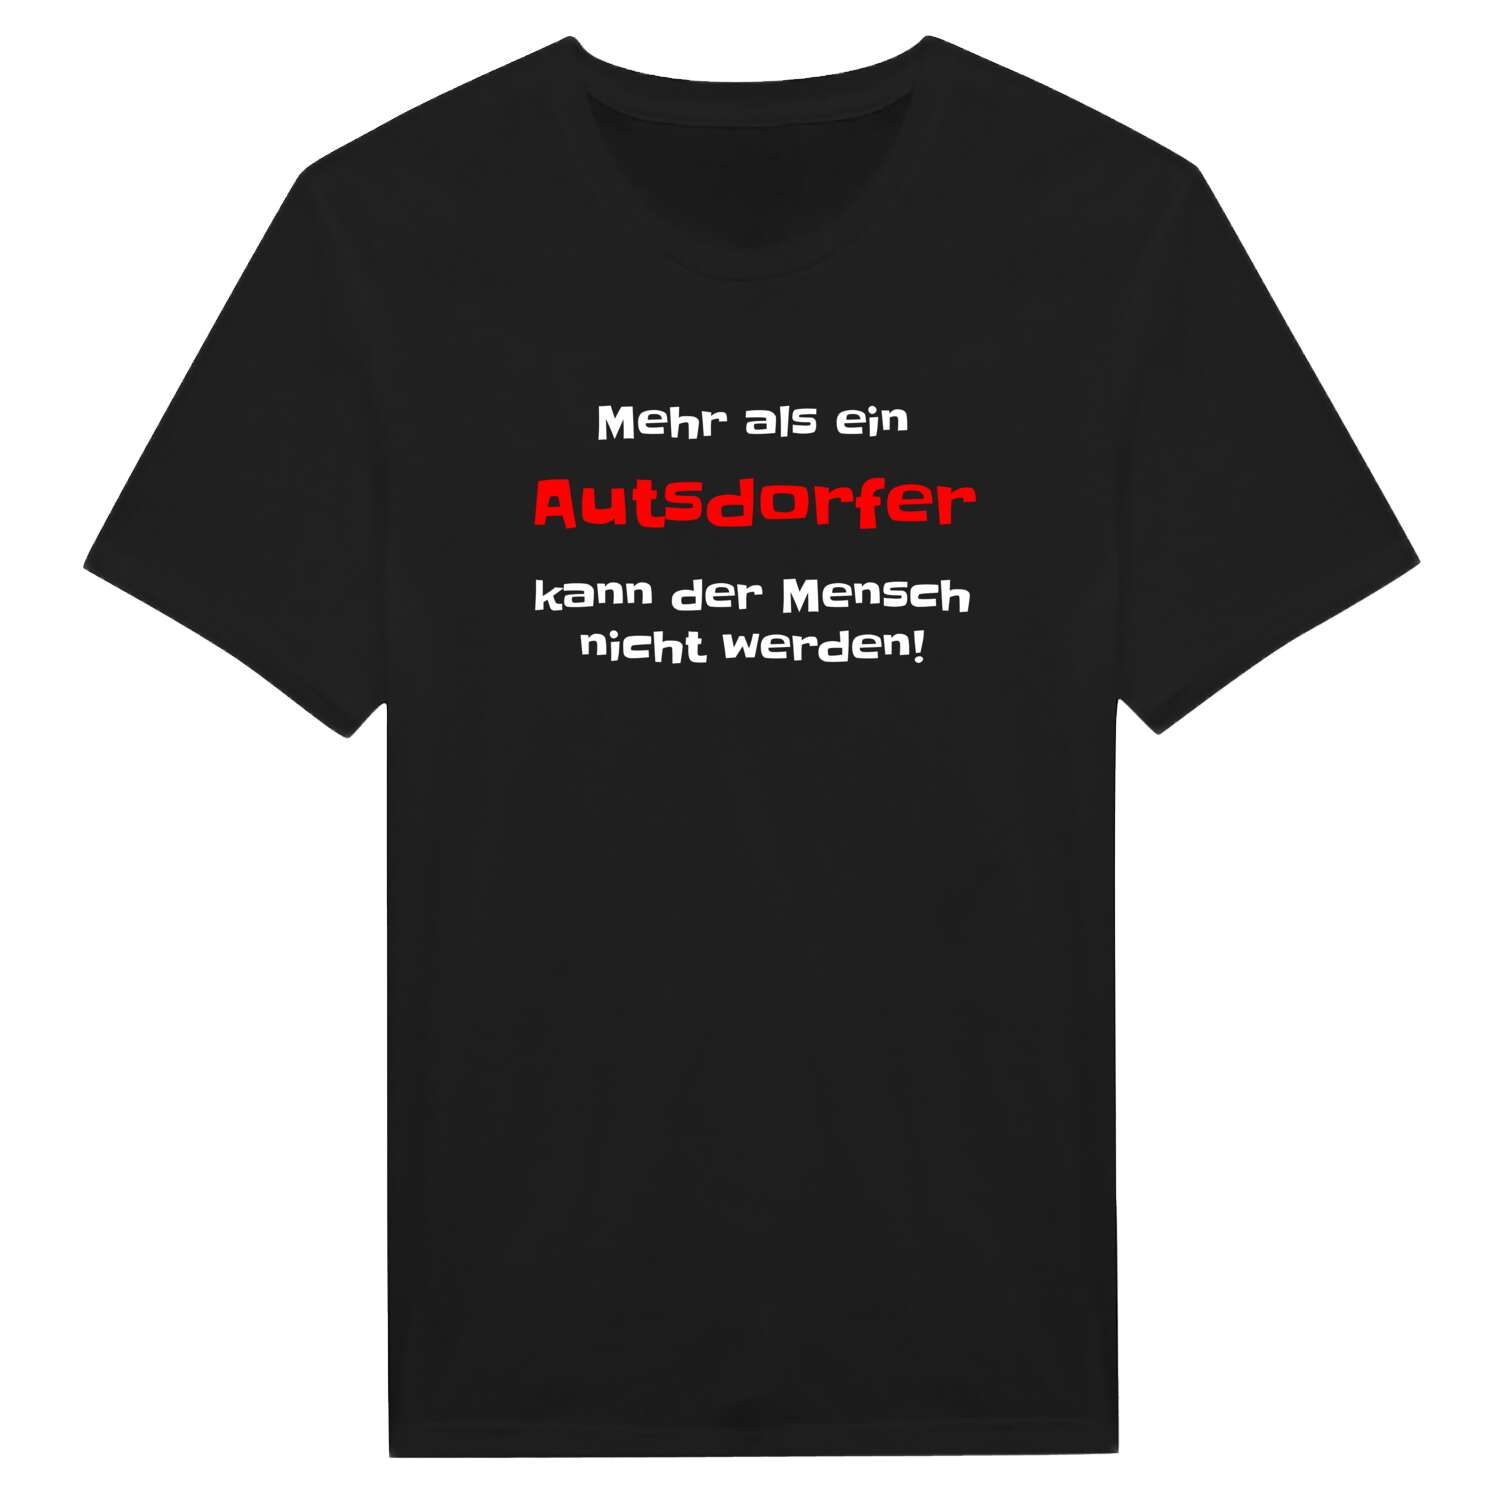 Autsdorf T-Shirt »Mehr als ein«